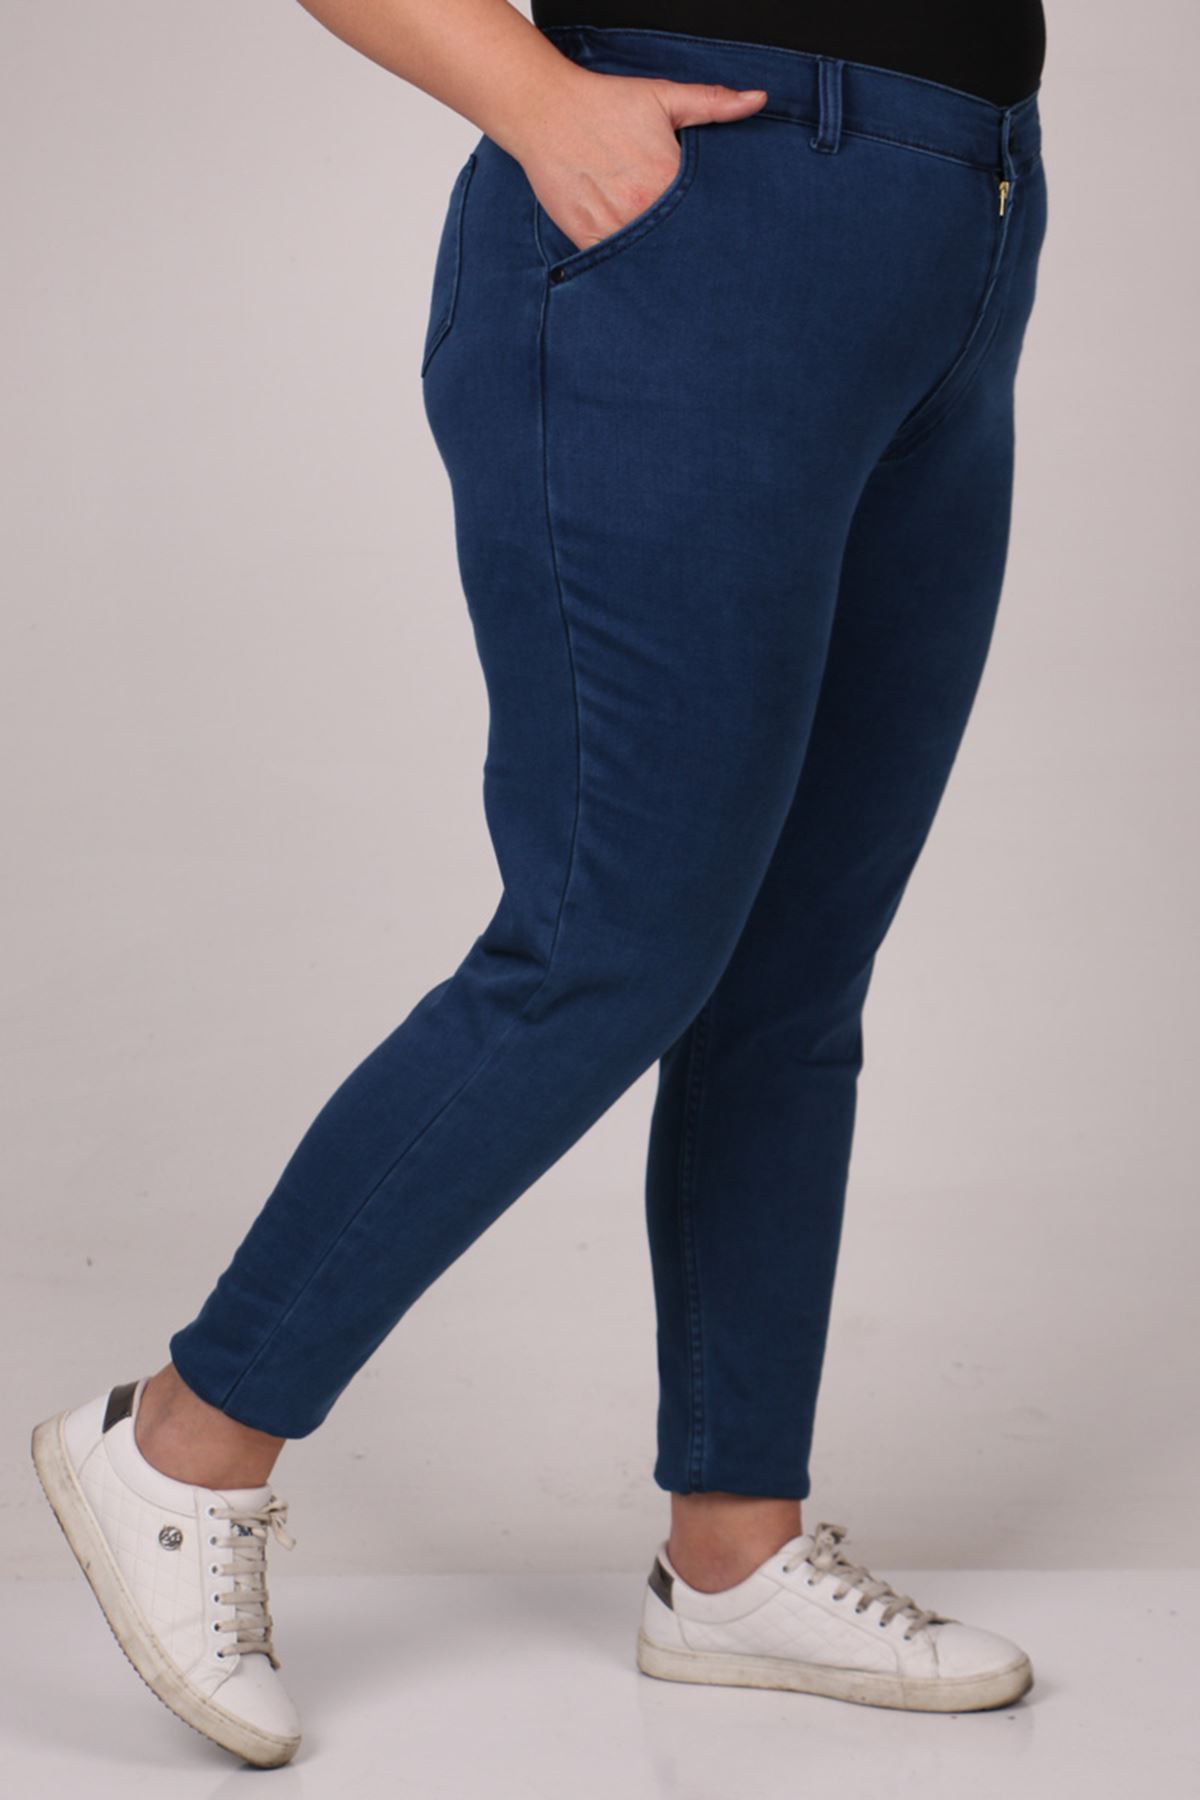 29028 Büyük Beden Beli Lastikli Uzun Boy Dar Paça Kot Pantolon - Koyu Mavi